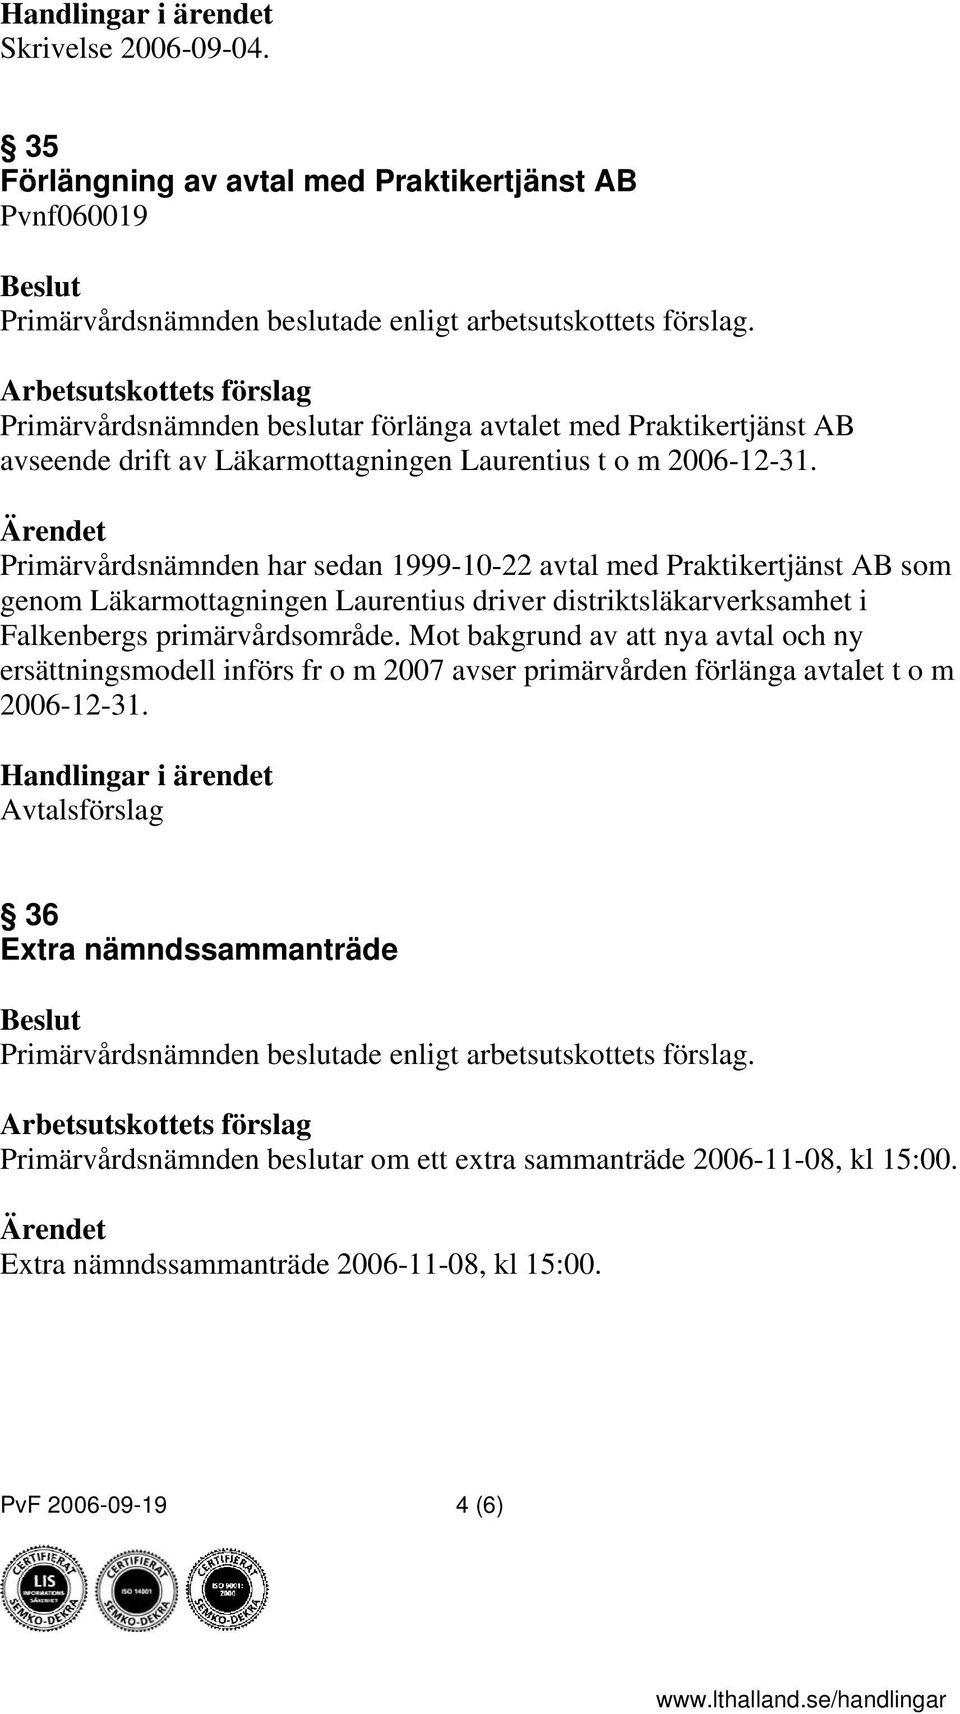 2006-12-31. Primärvårdsnämnden har sedan 1999-10-22 avtal med Praktikertjänst AB som genom Läkarmottagningen Laurentius driver distriktsläkarverksamhet i Falkenbergs primärvårdsområde.